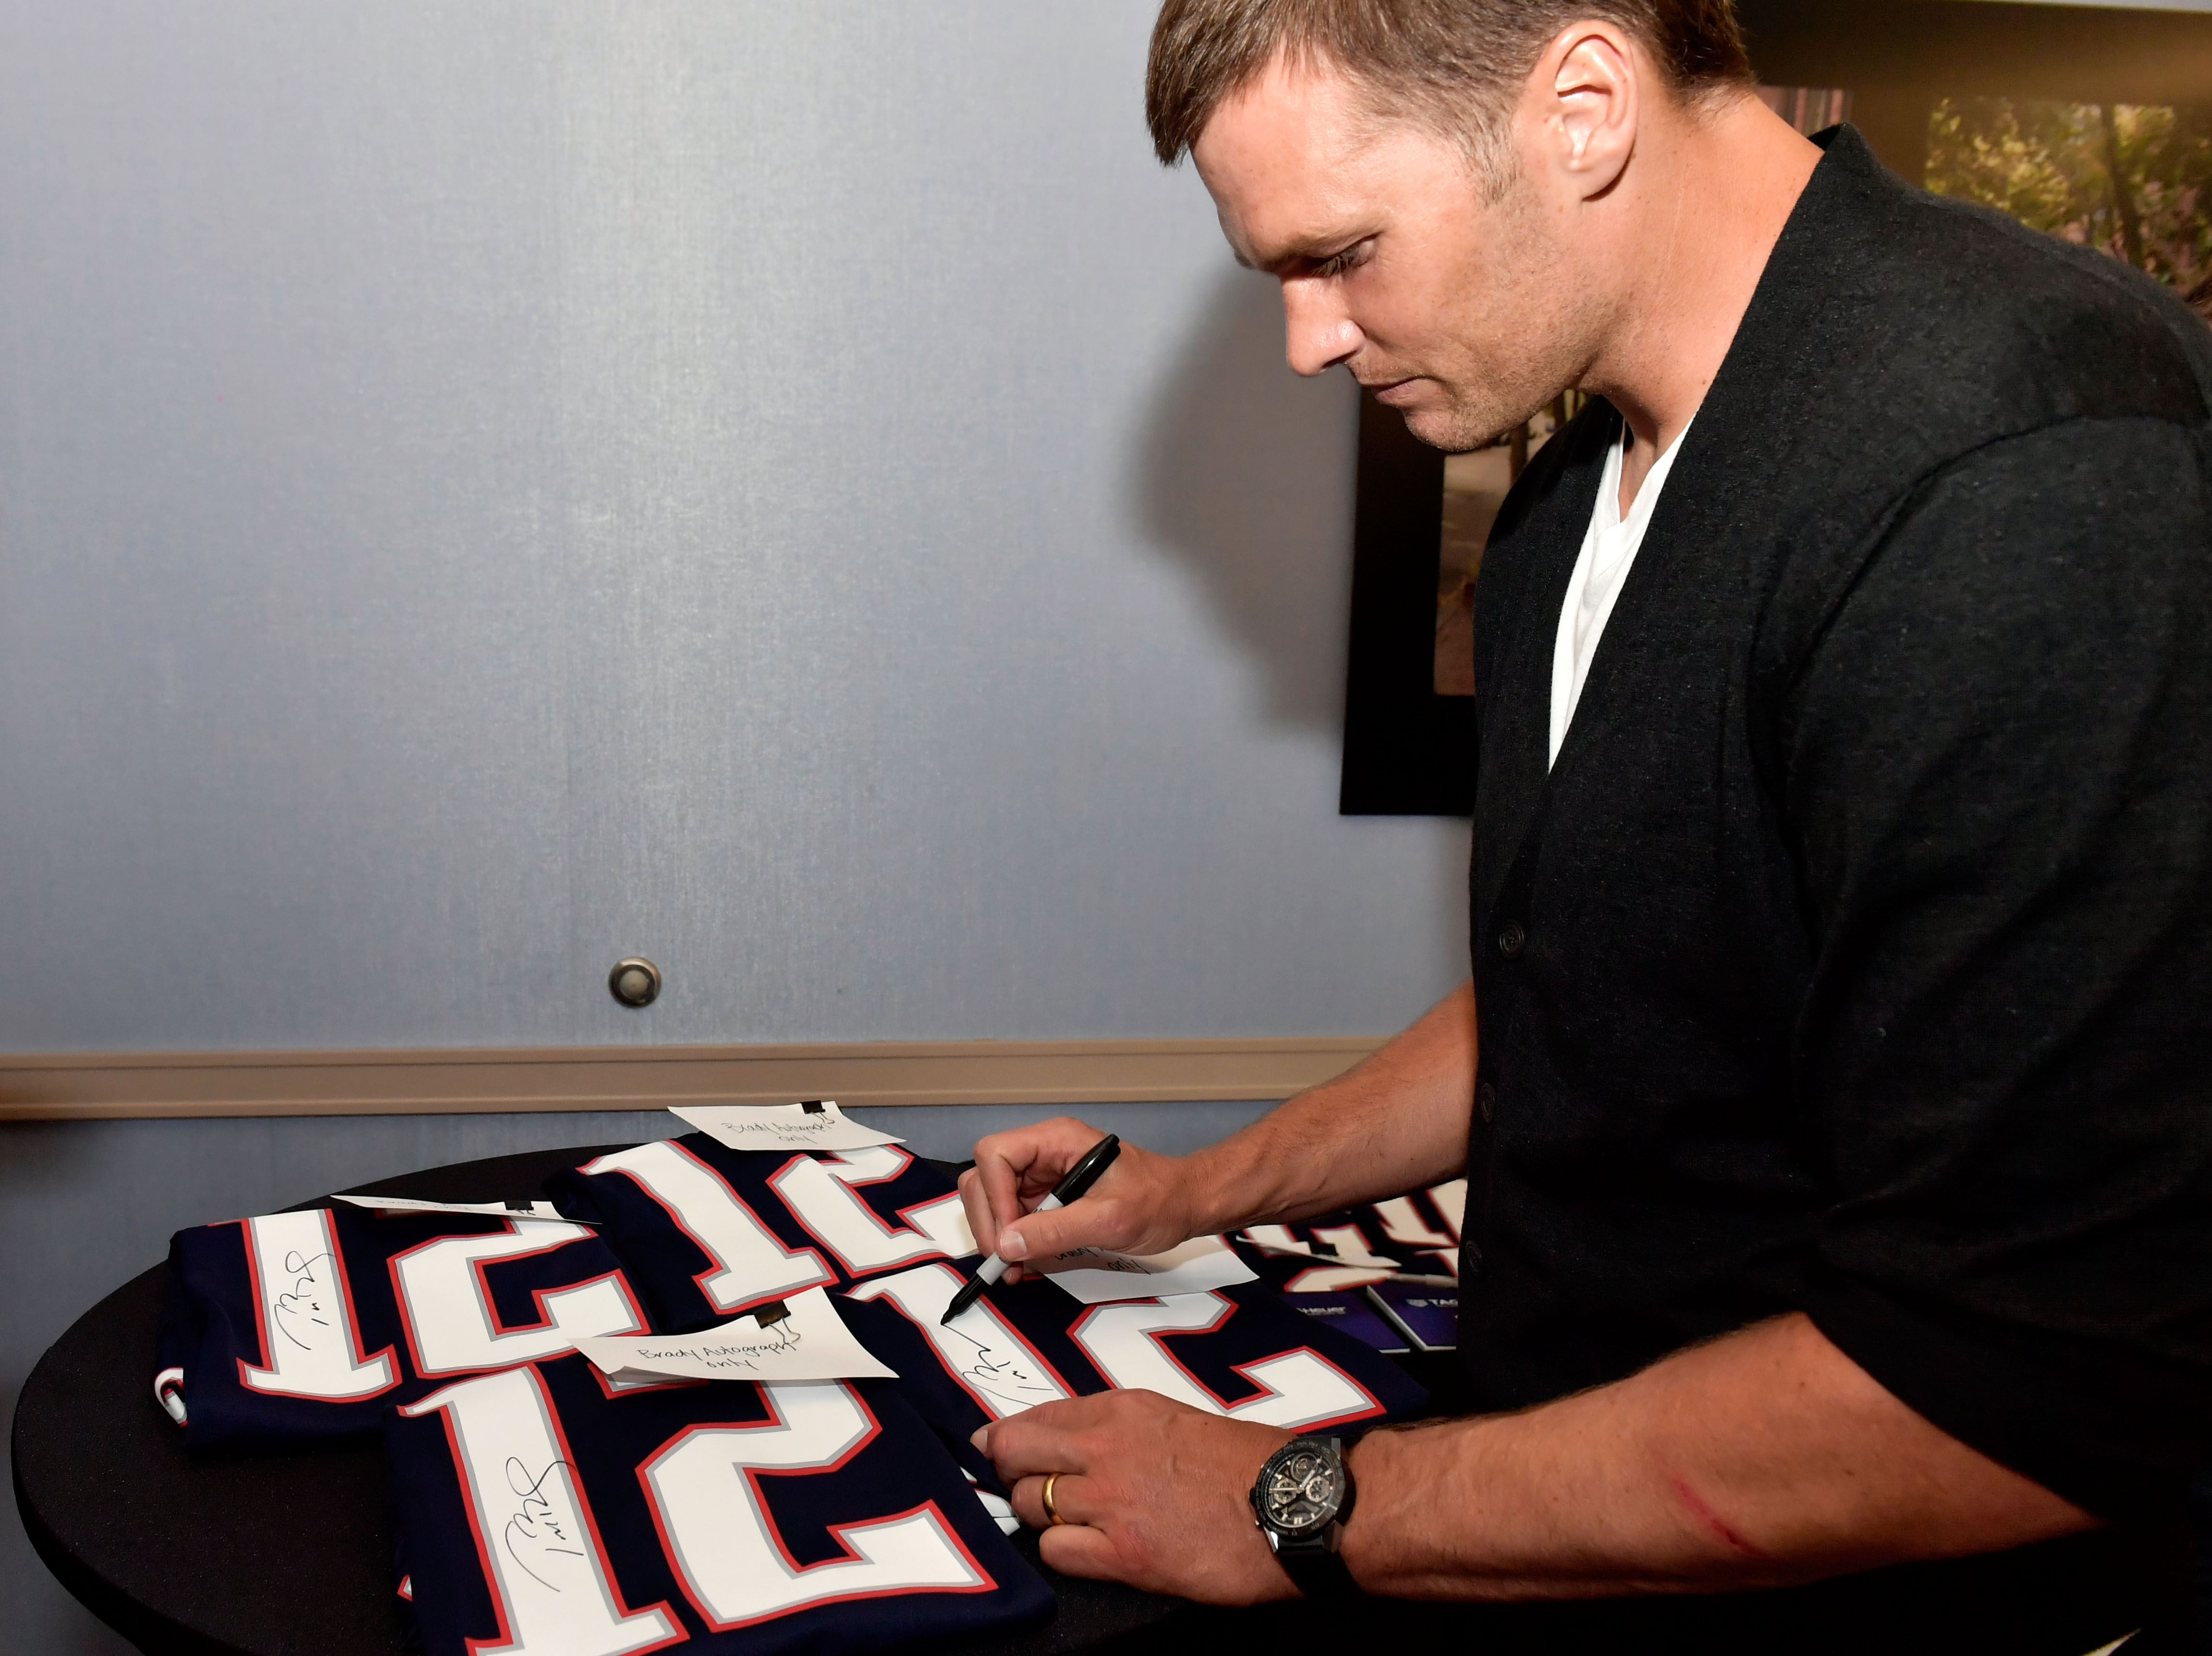 Former Patriots quarterback Tom Brady autographs football jerseys in 2017